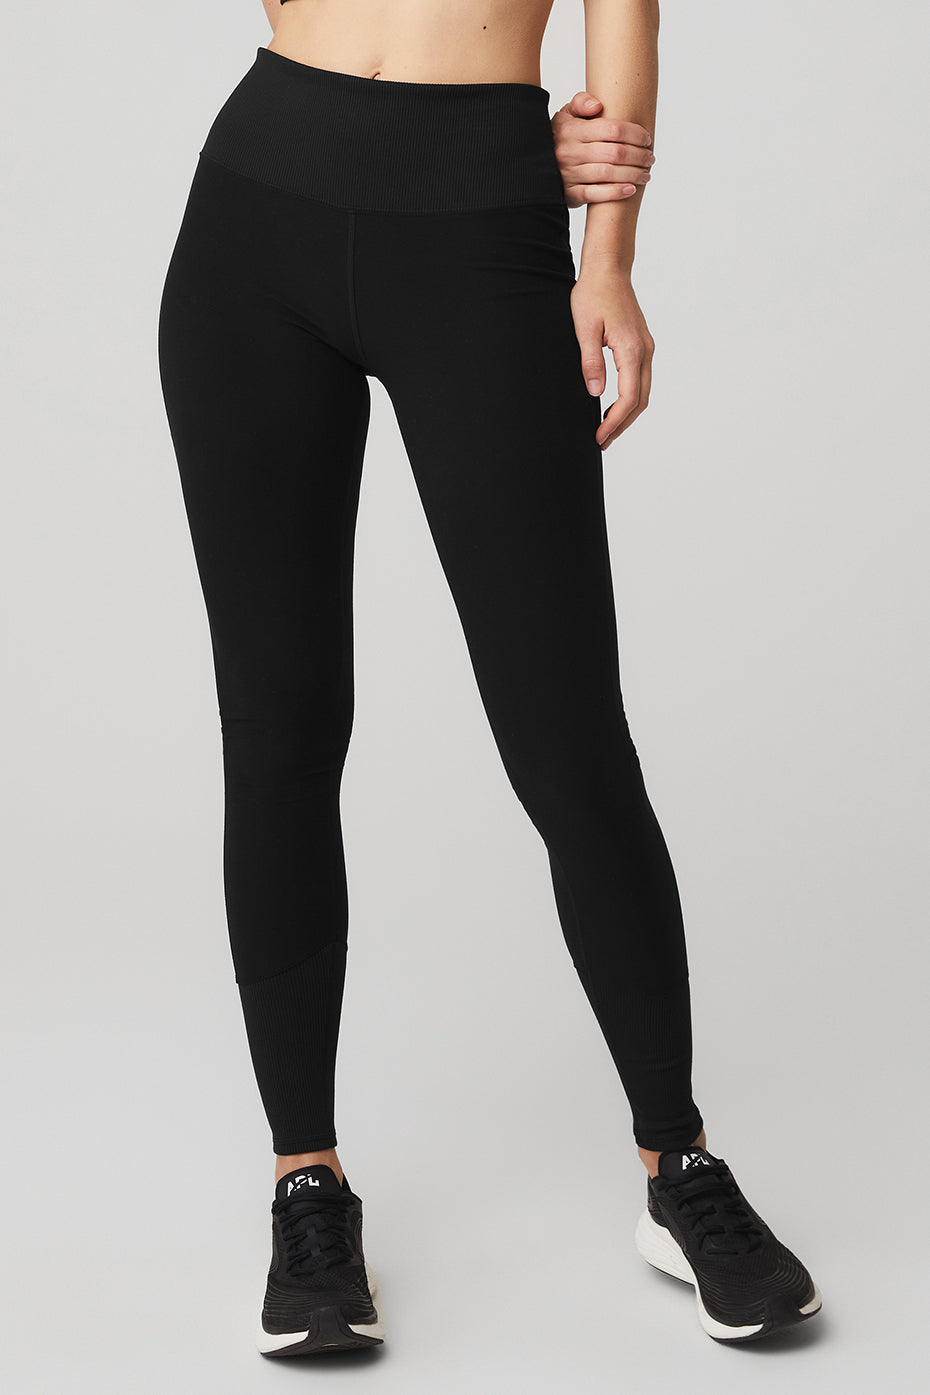 Black Textured High Waist Leggings – Livfit Activewear